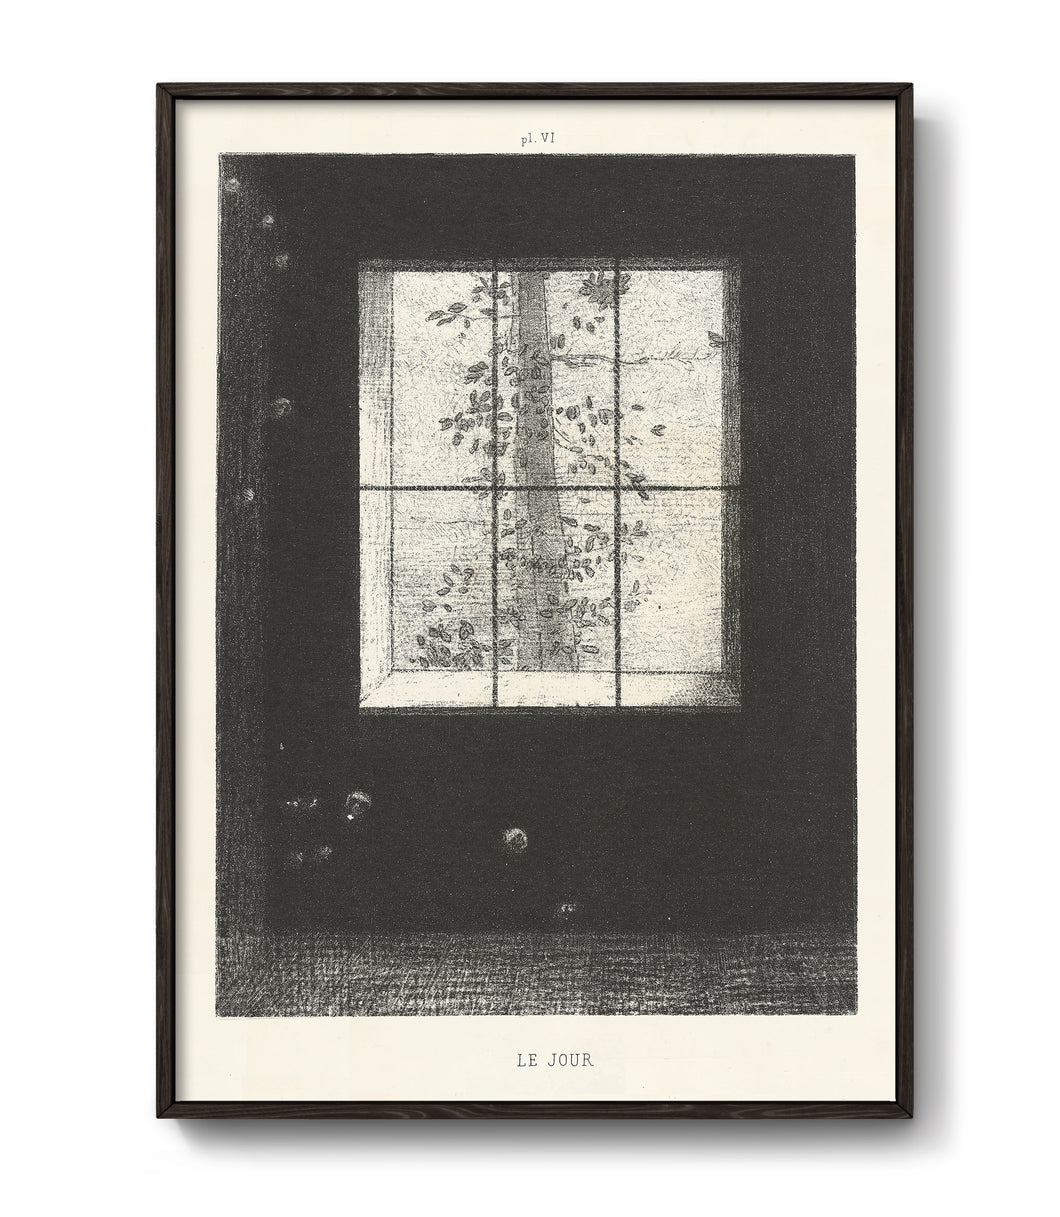 Le Jour by Odilon Redon, 1891